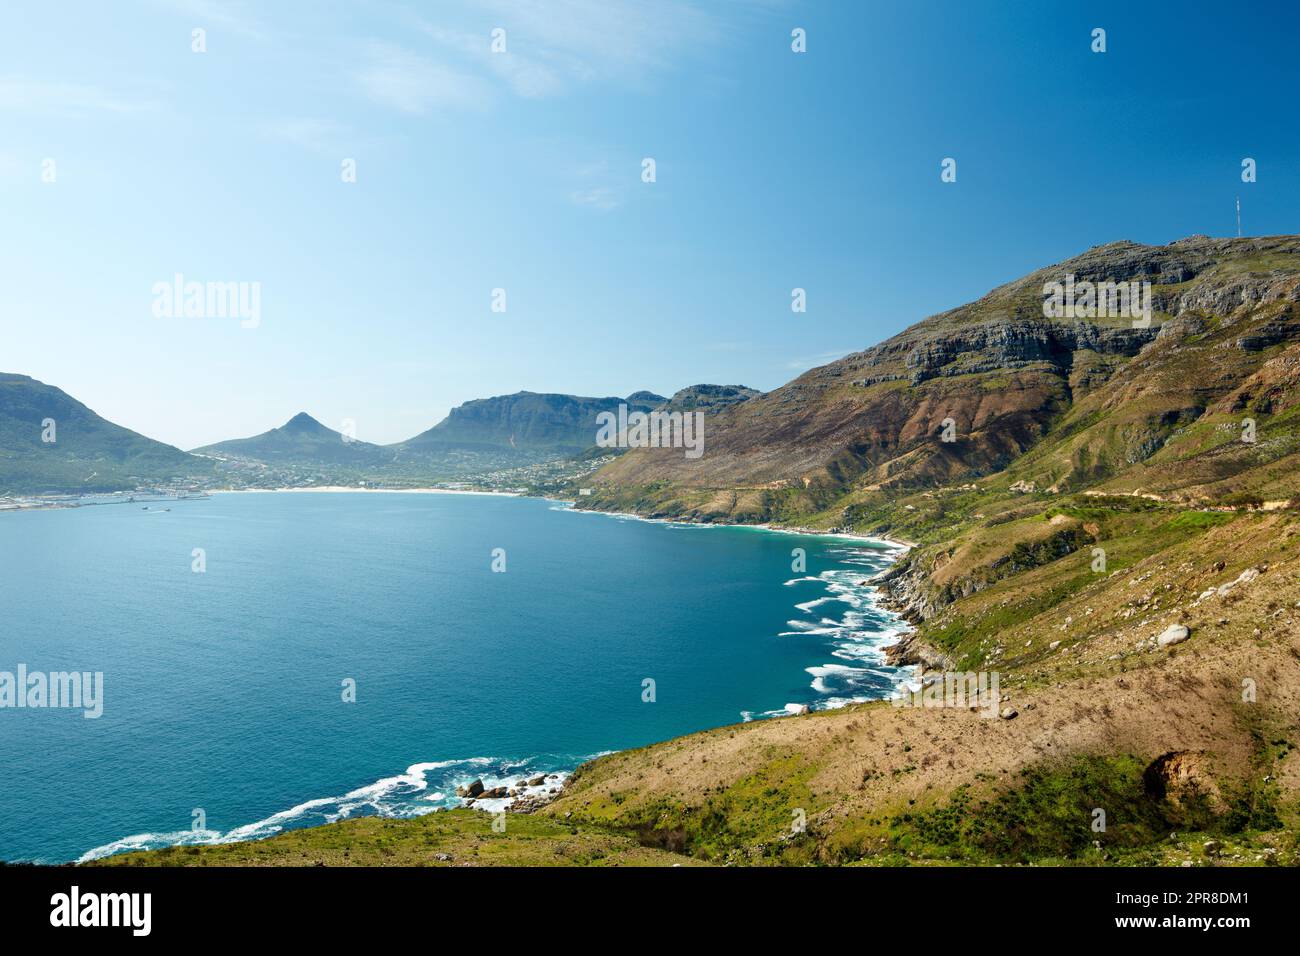 Panoramablick auf das Meer, umgeben von Bergen, von einem Wanderweg in Hout Bay, Kapstadt in Südafrika. Beliebte Touristenattraktion mit Hügeln und ruhigem Wasser vor einem blauen Himmel mit viel Platz Stockfoto